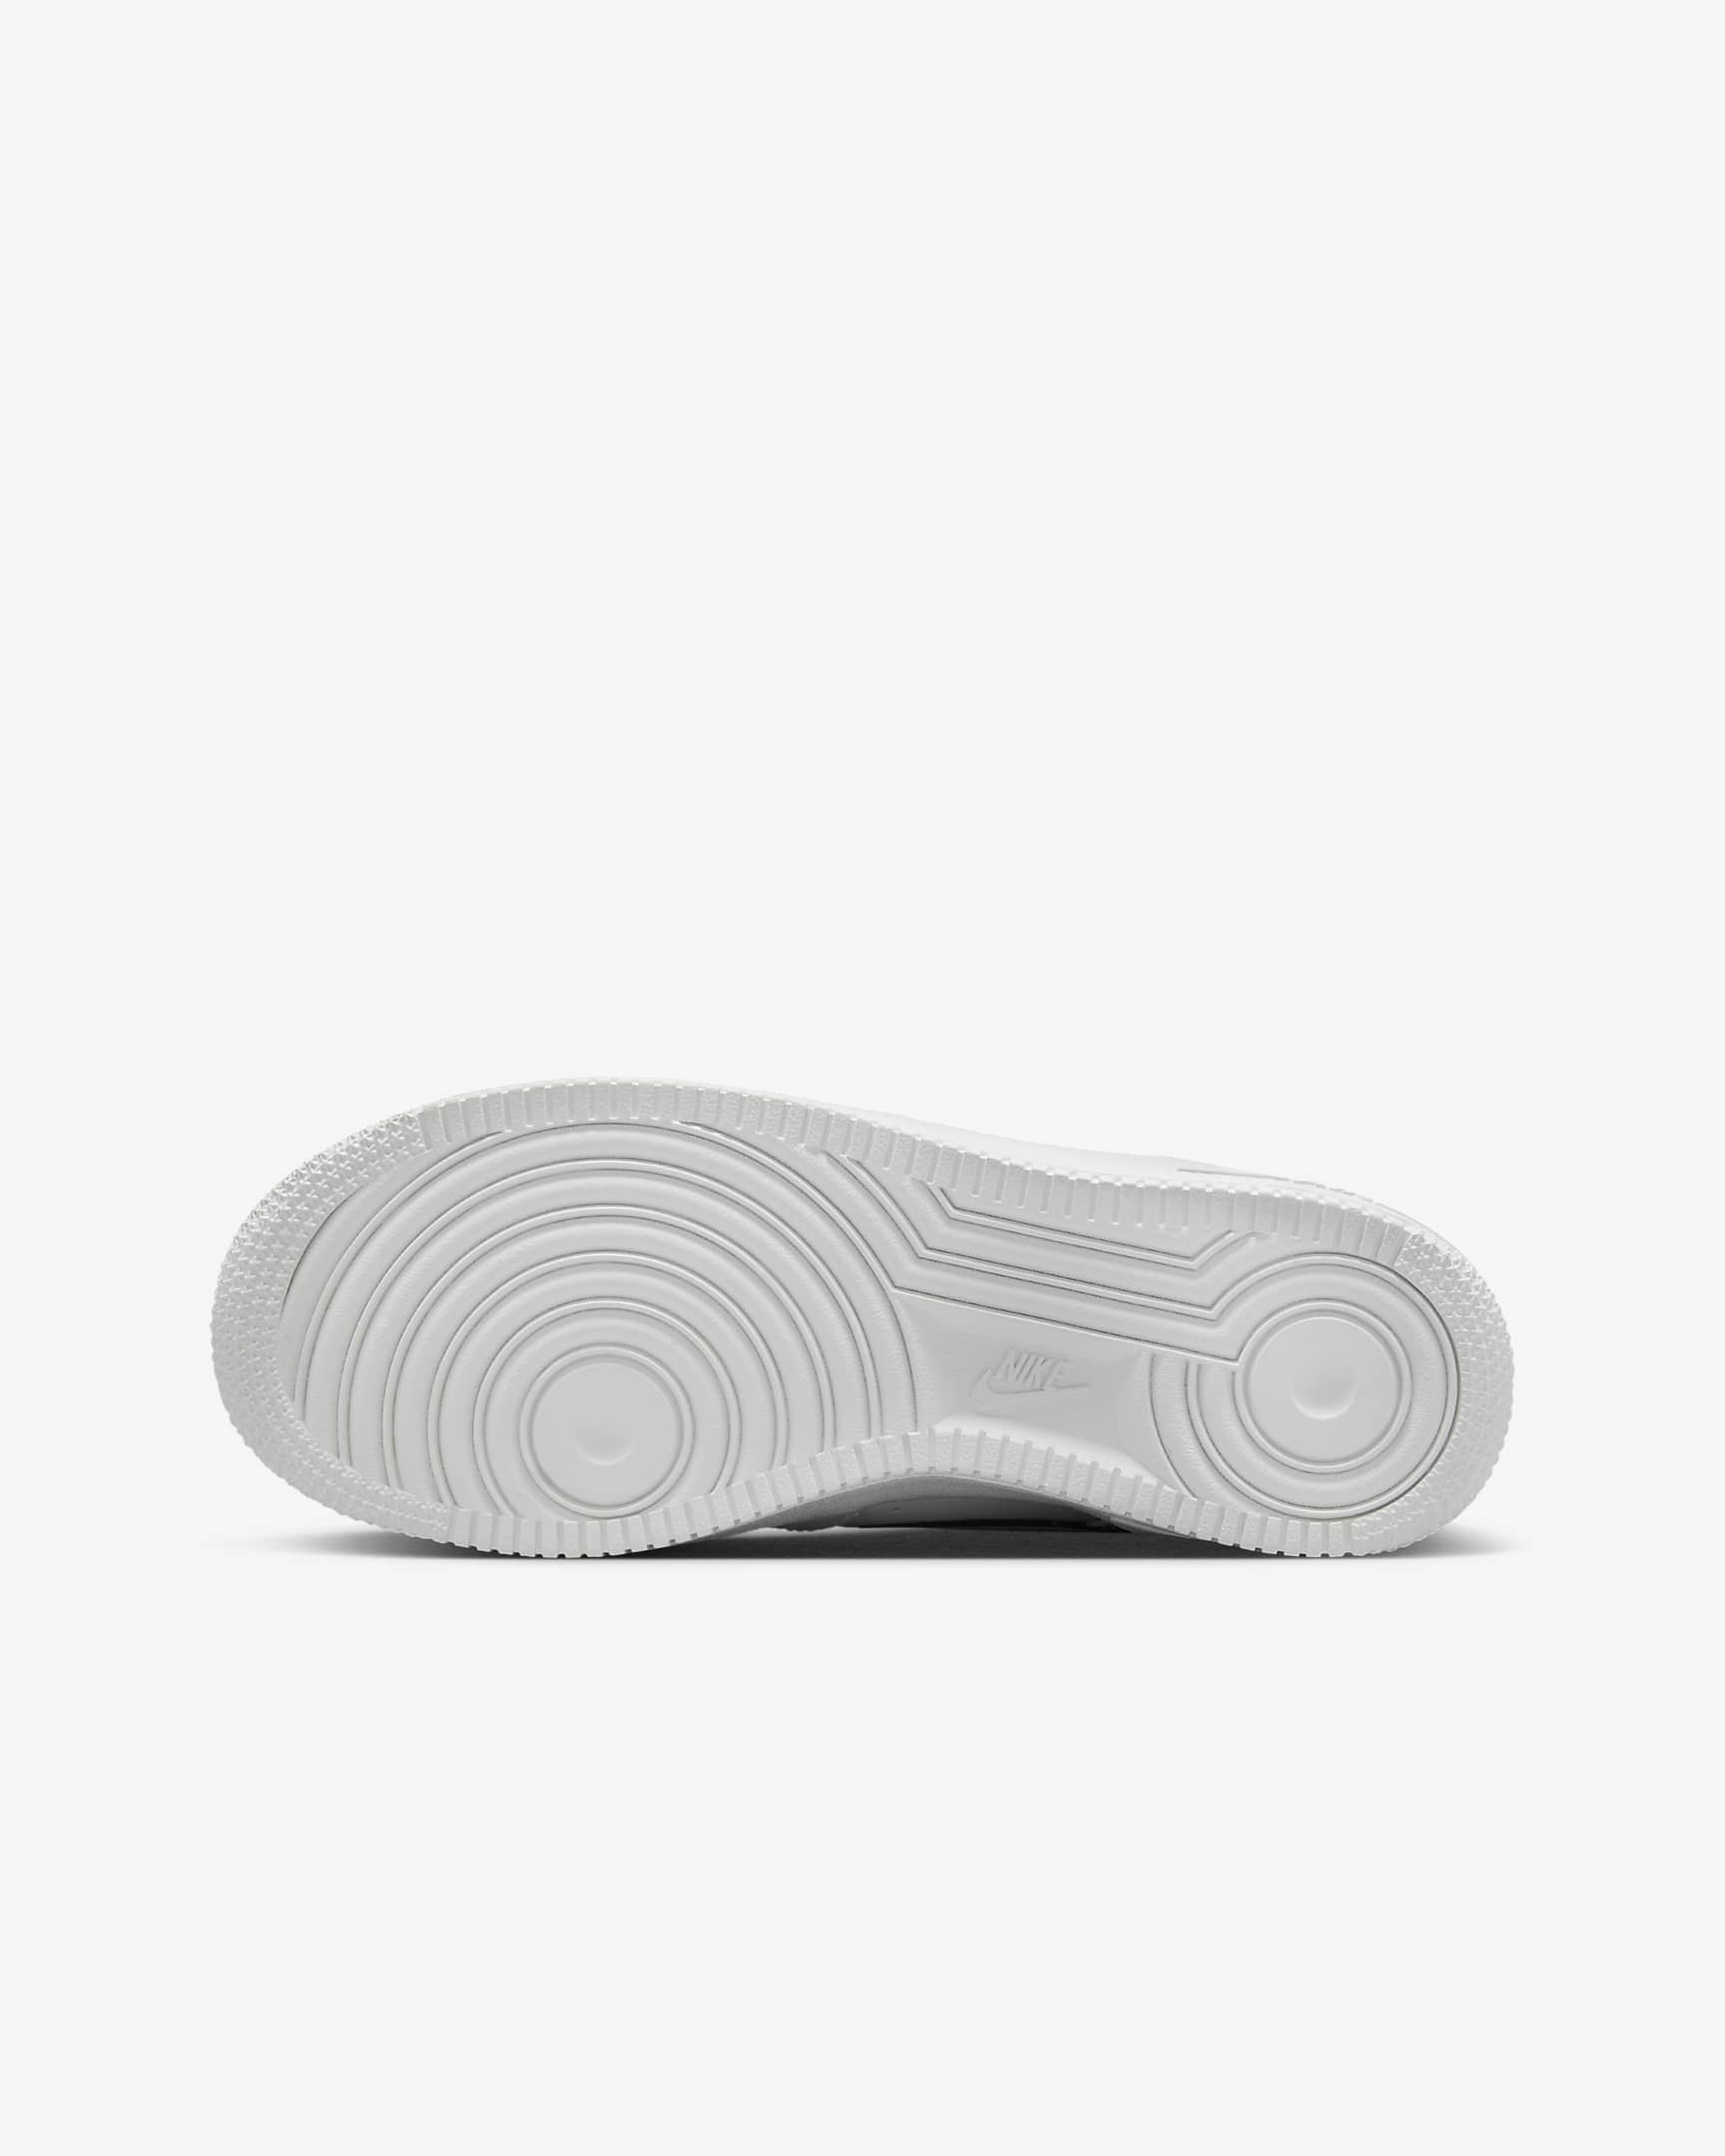 Nike Air Force 1 LV8 3 Schuh für ältere Kinder - Summit White/Bicoastal/Summit White